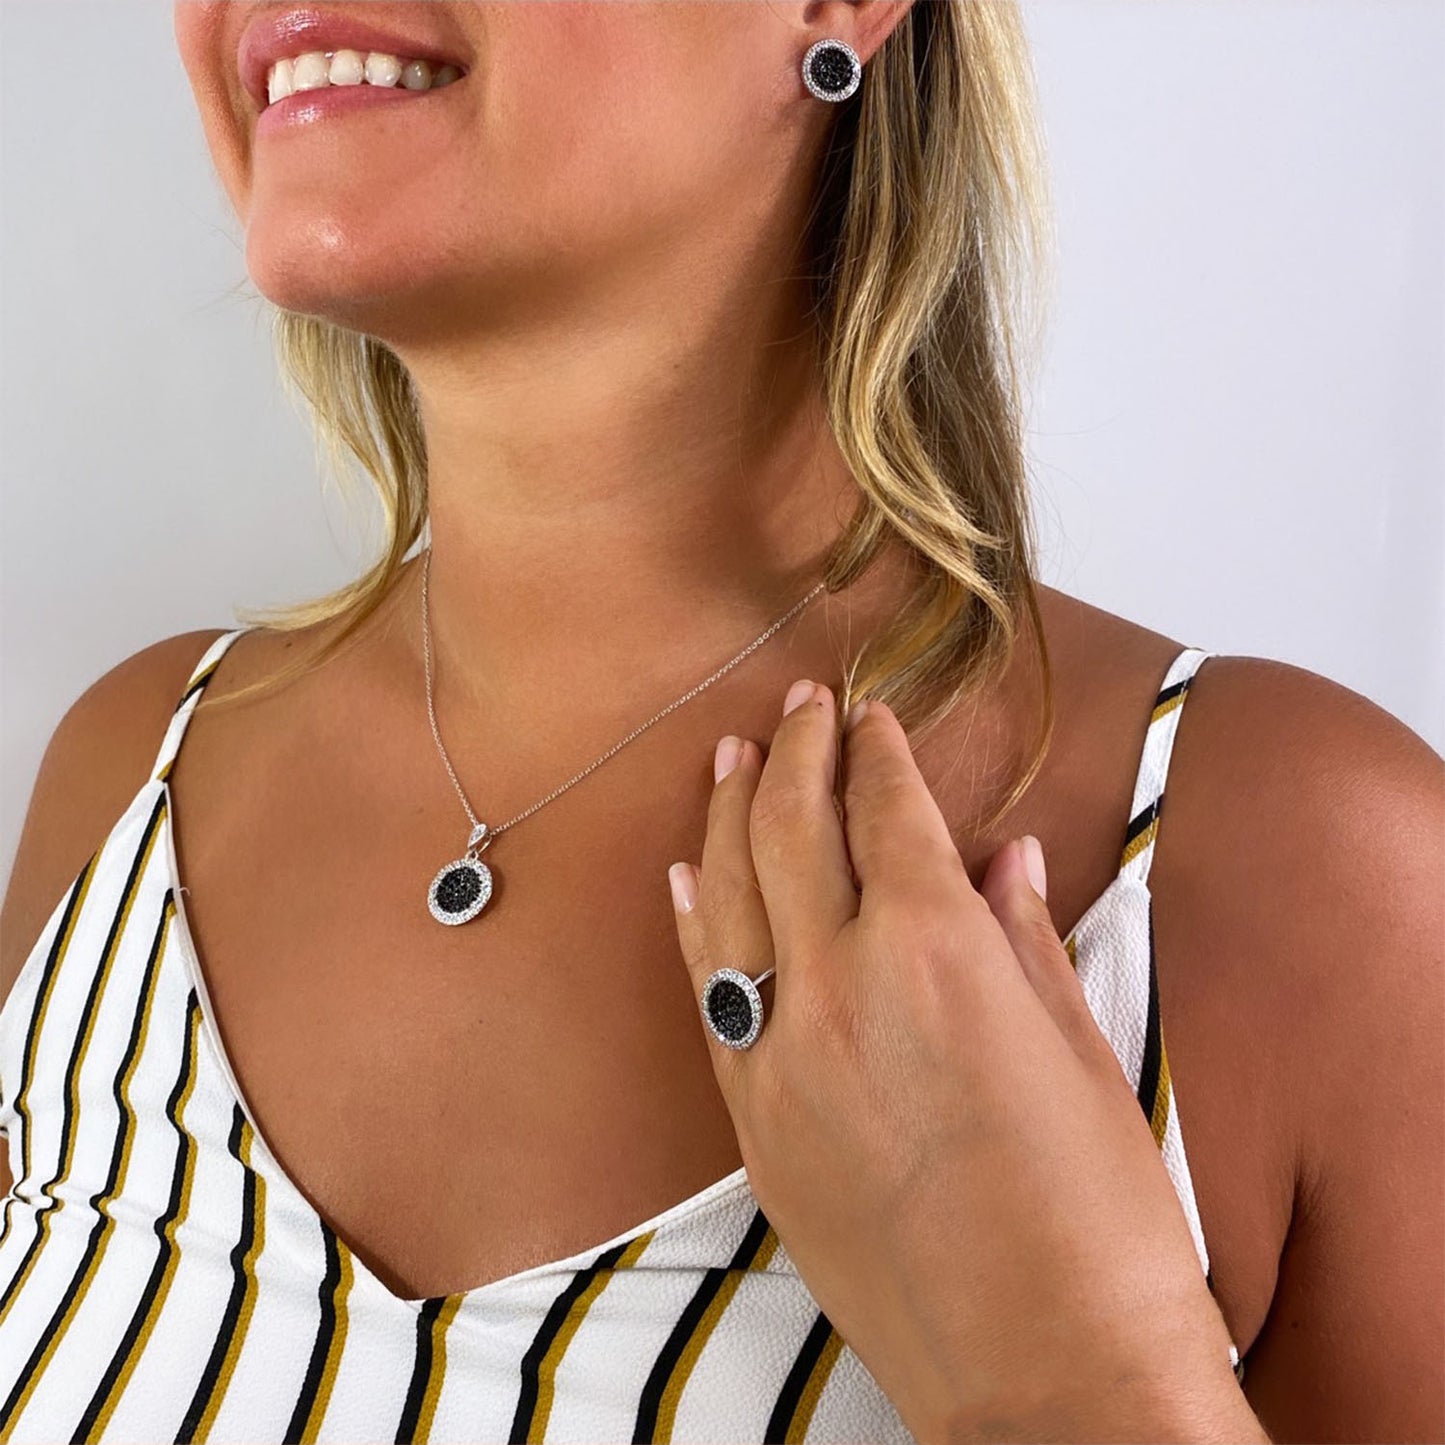 Willa CZ Pave Black Diamond Circle Icon Pendant Necklace, Silver - Zahra Jewelry